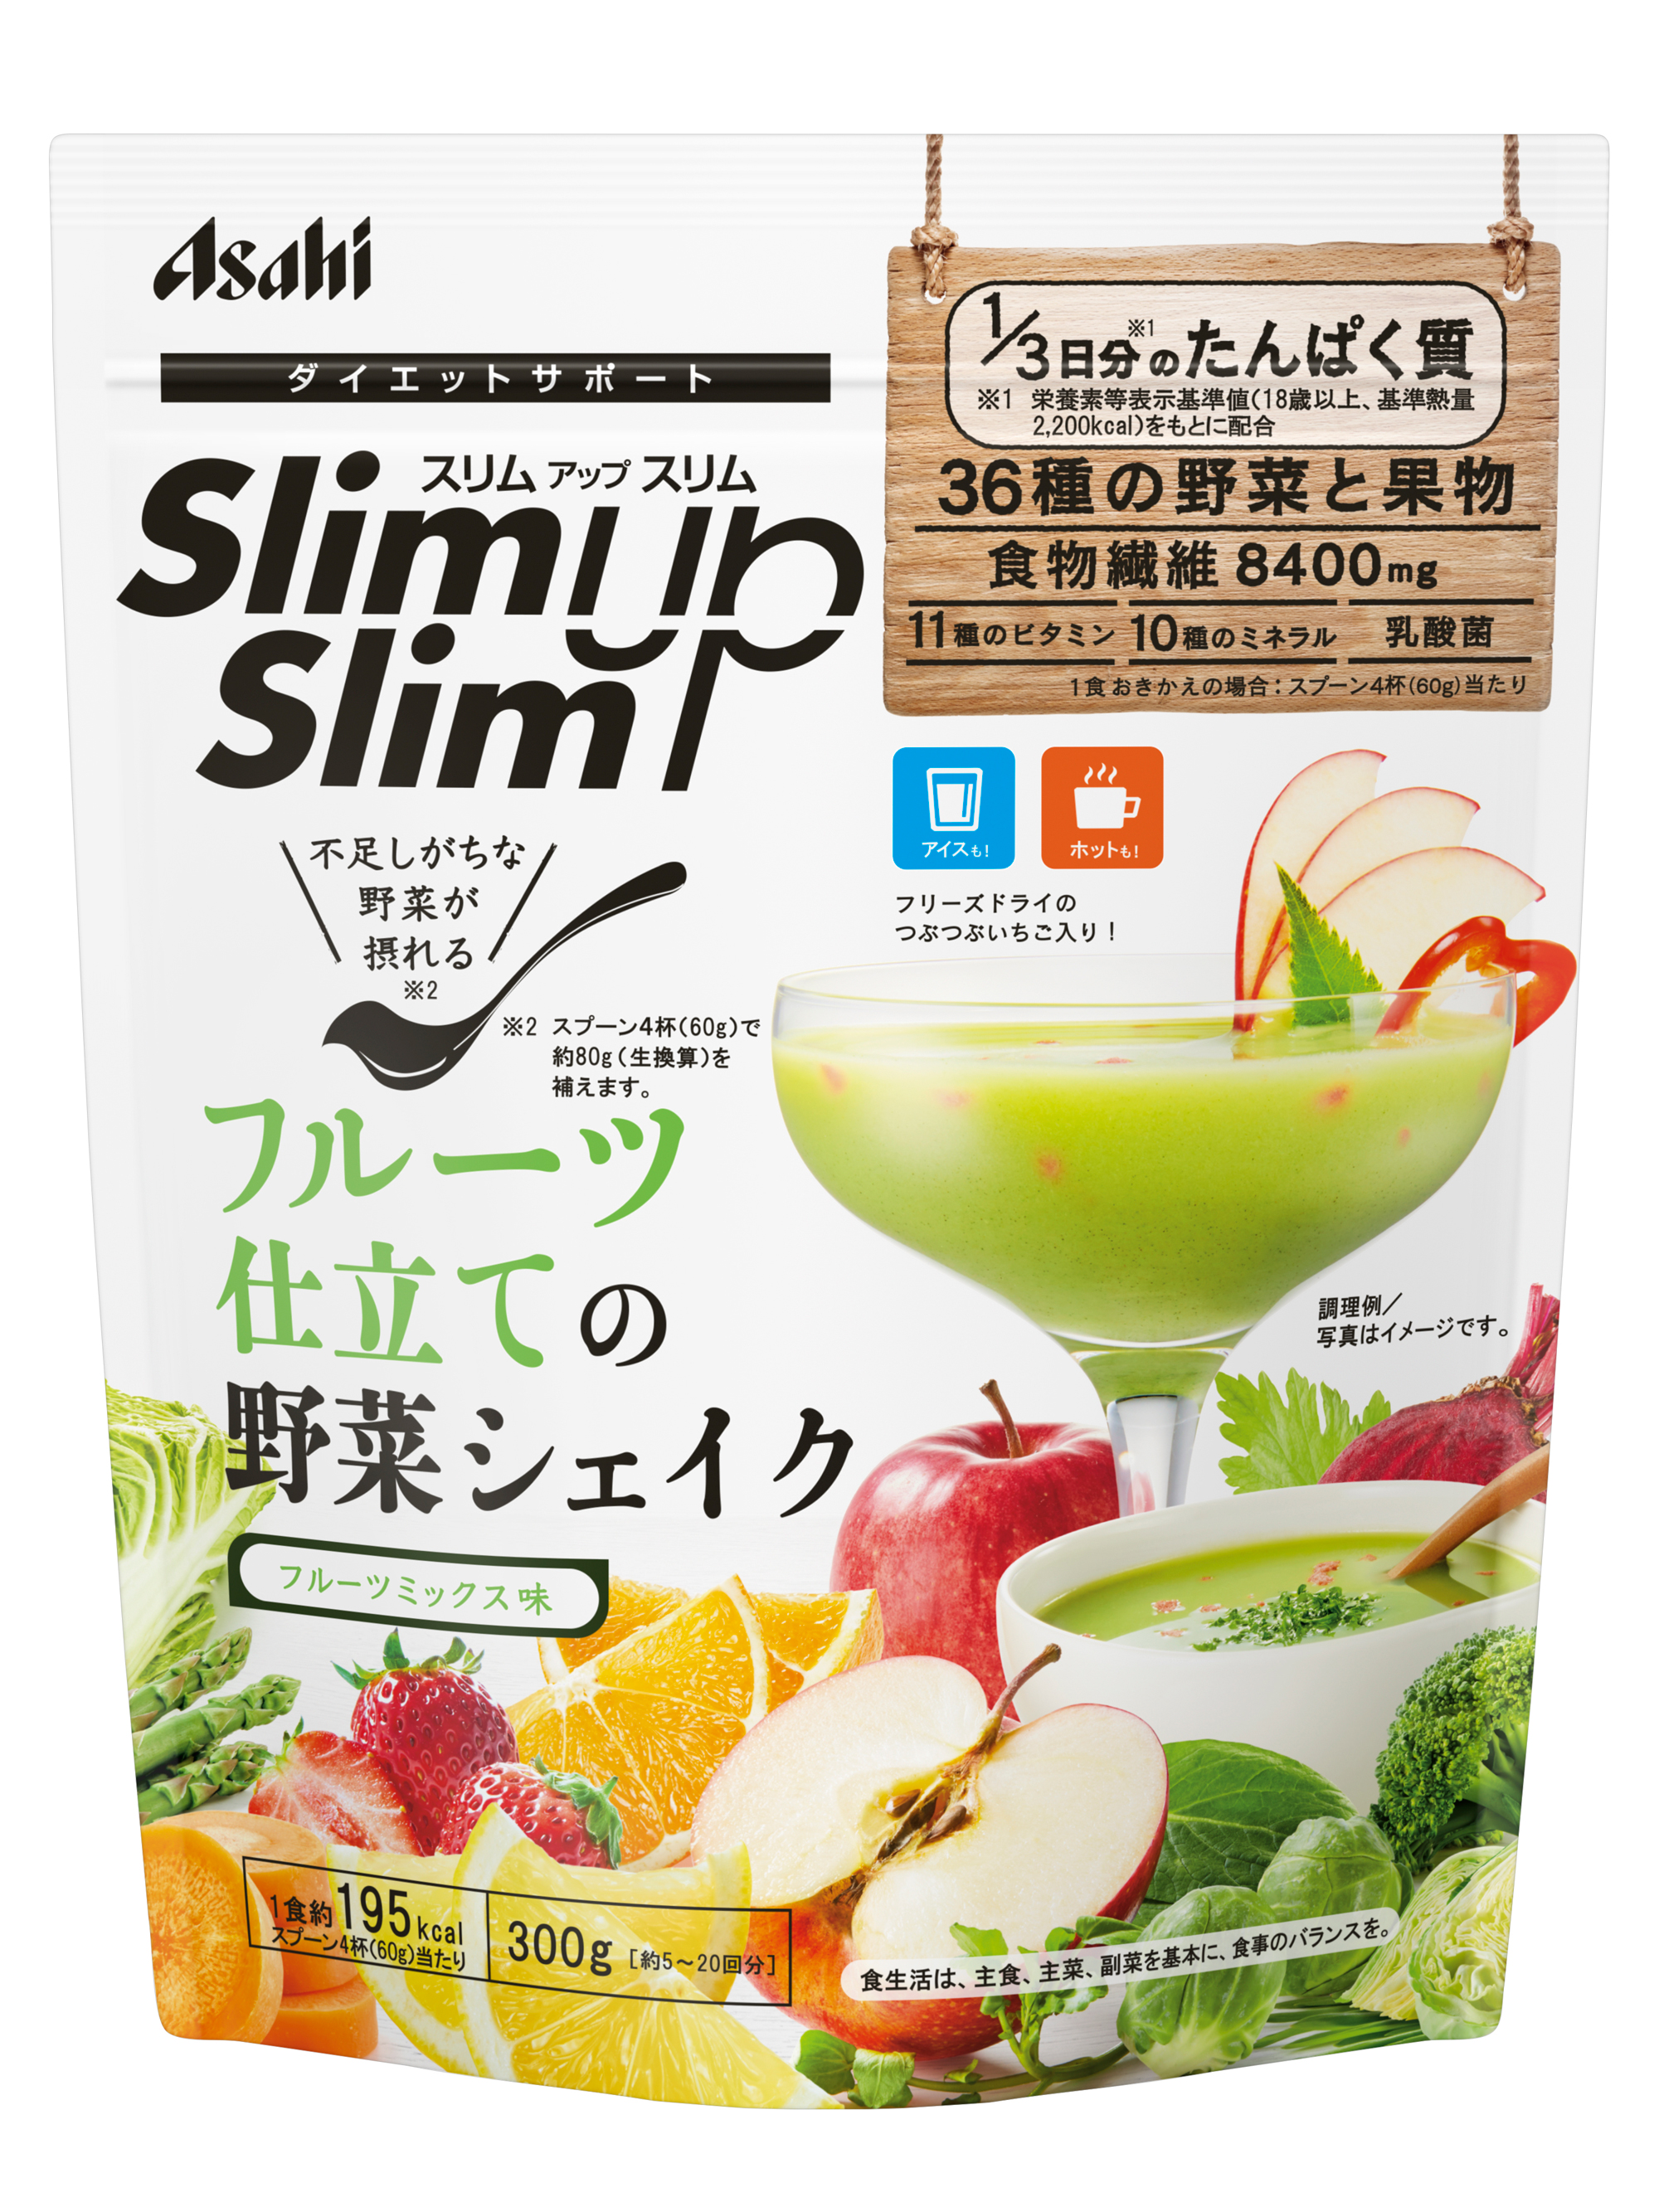 Протеиновый смузи с витаминами, минералами и молочнокислыми бактериями Protein Smoothie SlimUpSlim Asahi, 300 гр